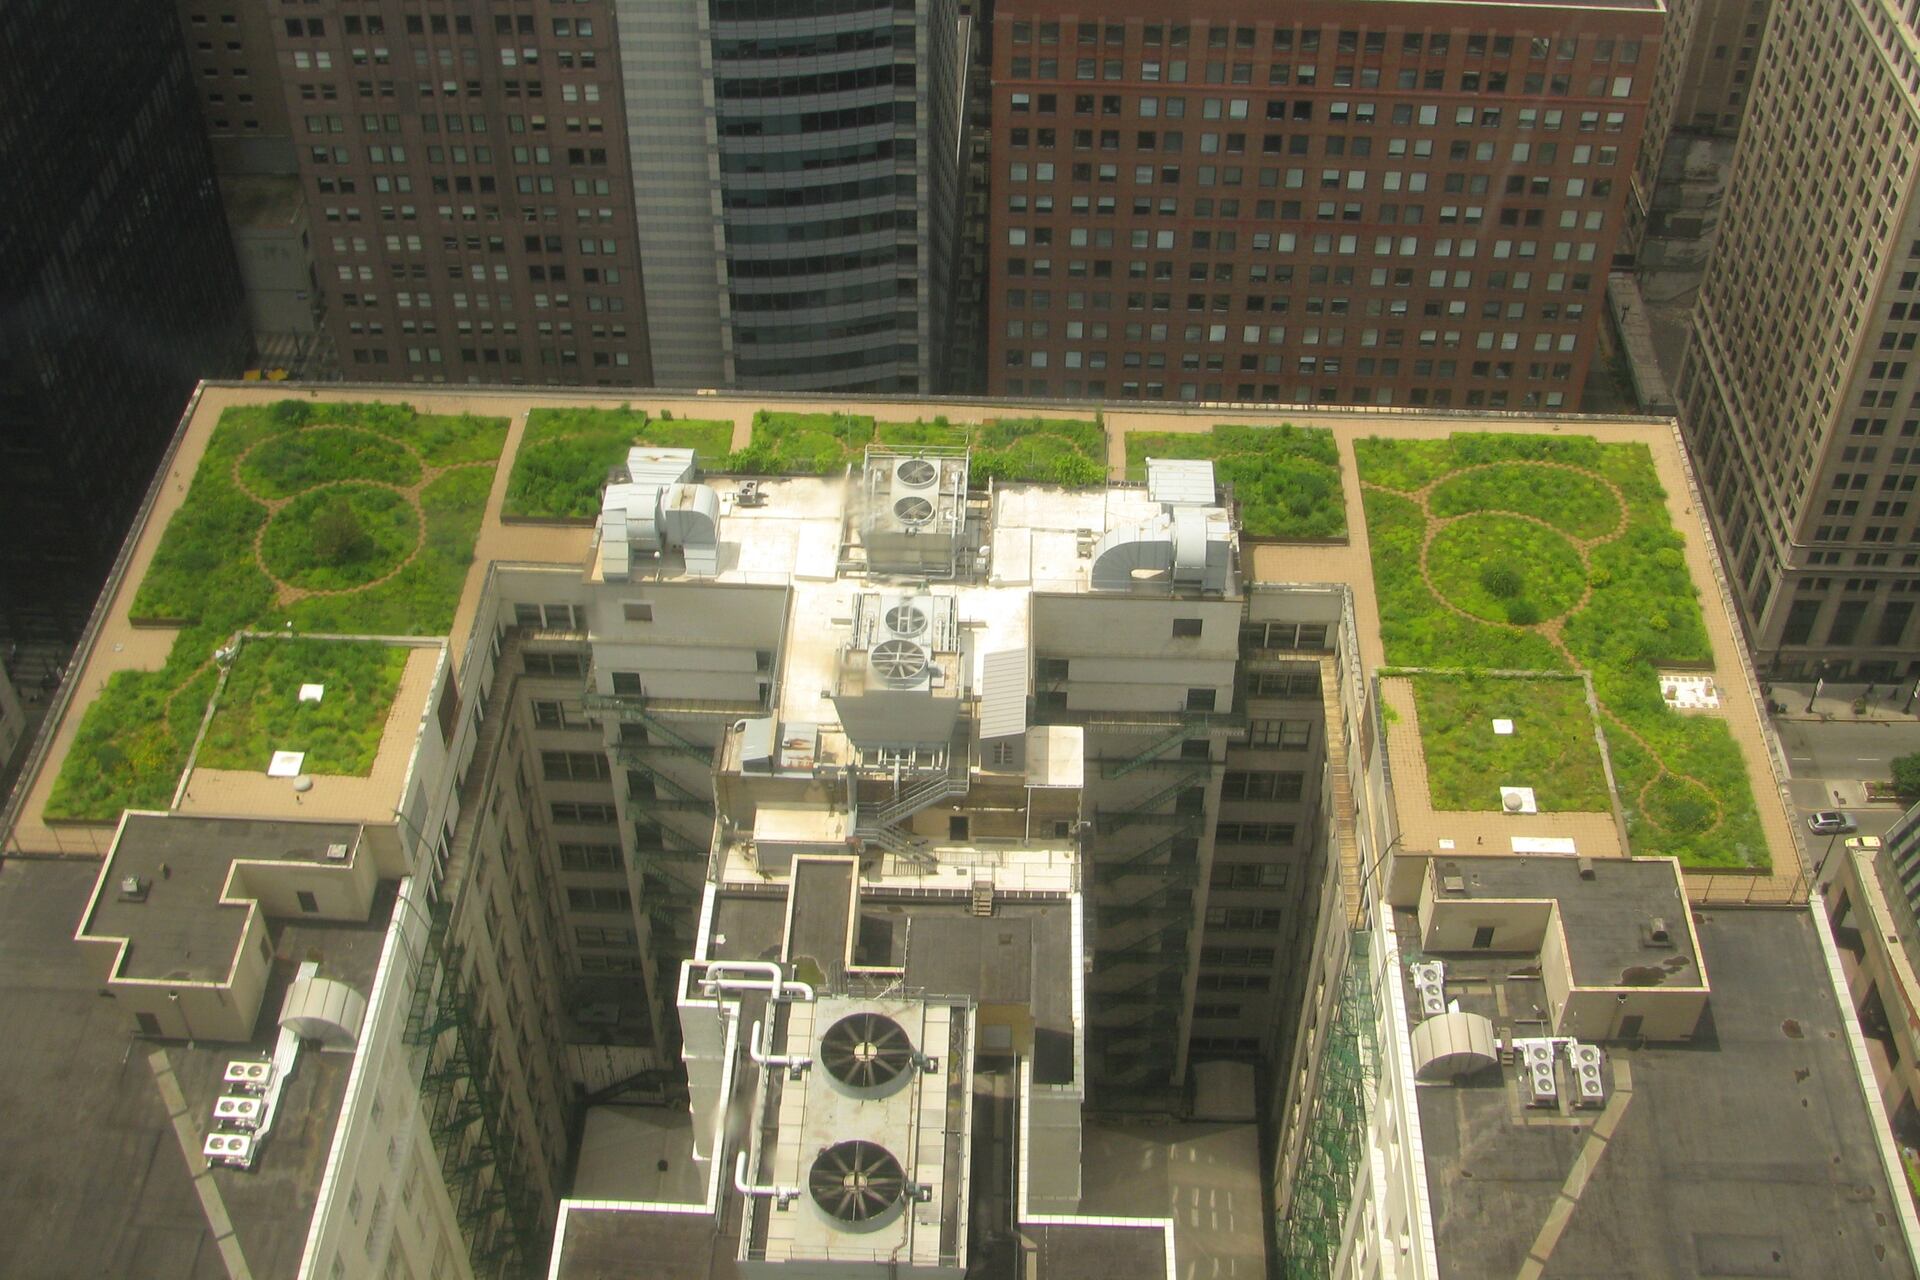 संयुक्त राज्य अमेरिका में शिकागो में सिटी हॉल की छत पर एक छत वाला बगीचा